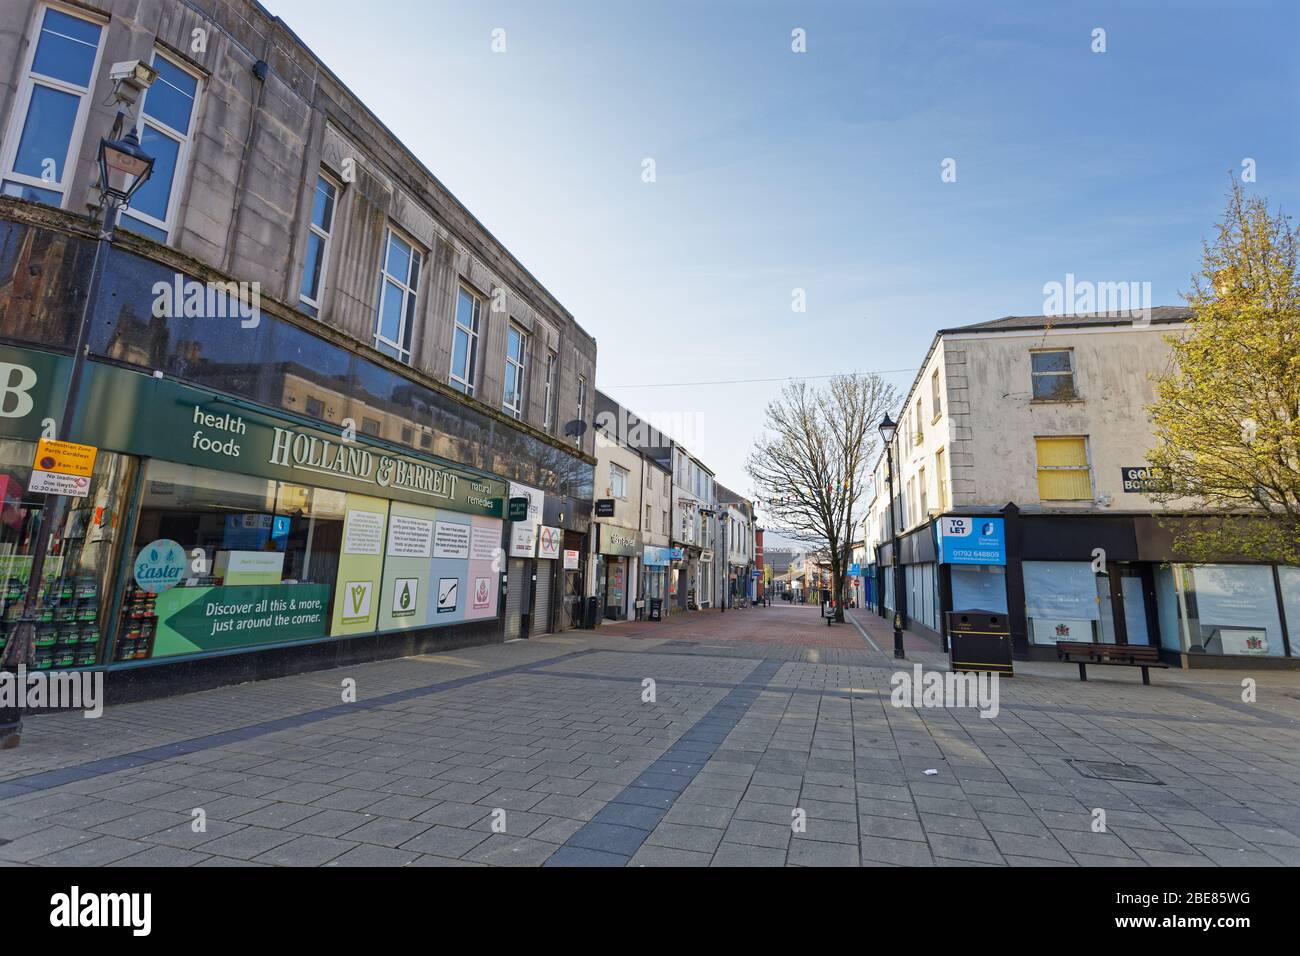 Im Bild: Die verlassene New Street im Stadtzentrum von Neath, Wales, Großbritannien. Freitag 27 März 2020 Re: Covid-19 Coronavirus Pandemie, UK. Stockfoto